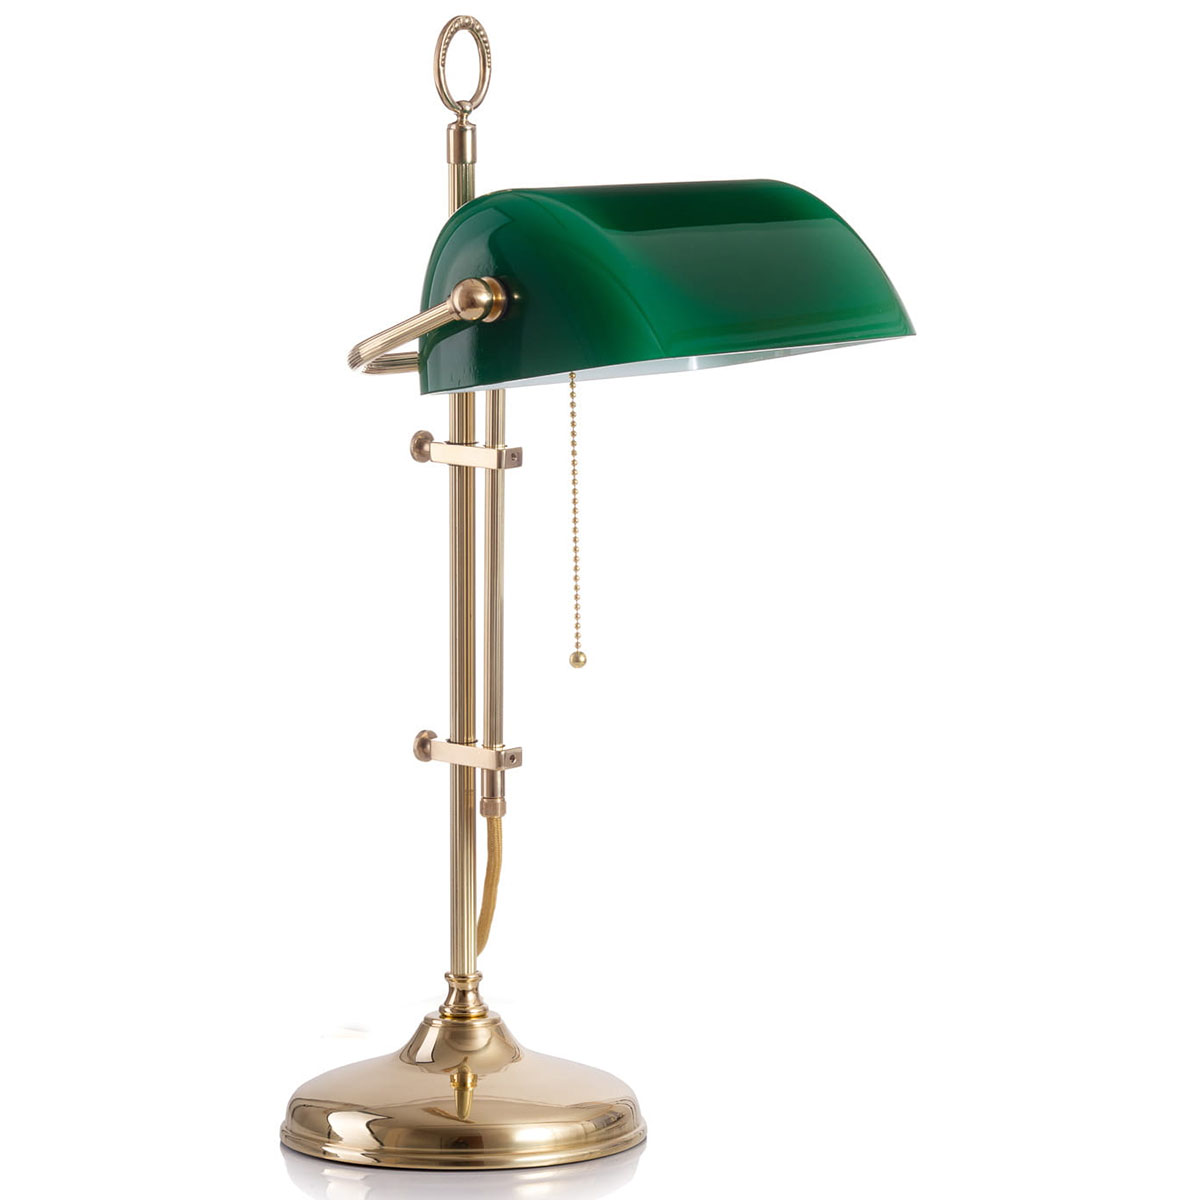 Klassische Schreibtischlampe: Bankerlampe mit rundem Sockel: Messing poliert, mit kanneliertem Gestänge, grüner Glas-Schirm